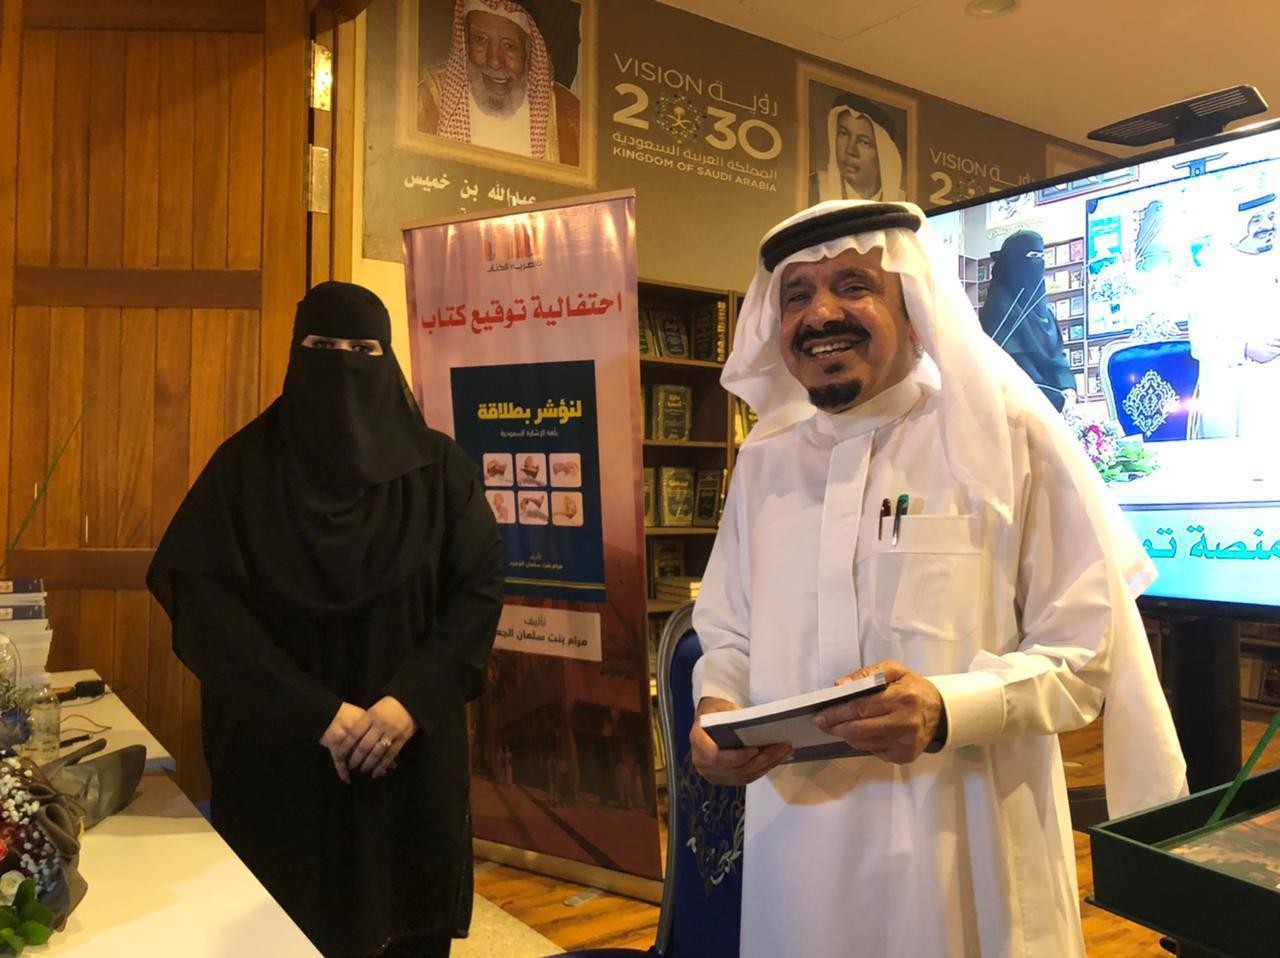 مرام الجعيد توقع كتابها الأول على مستوى الشرق الأوسط